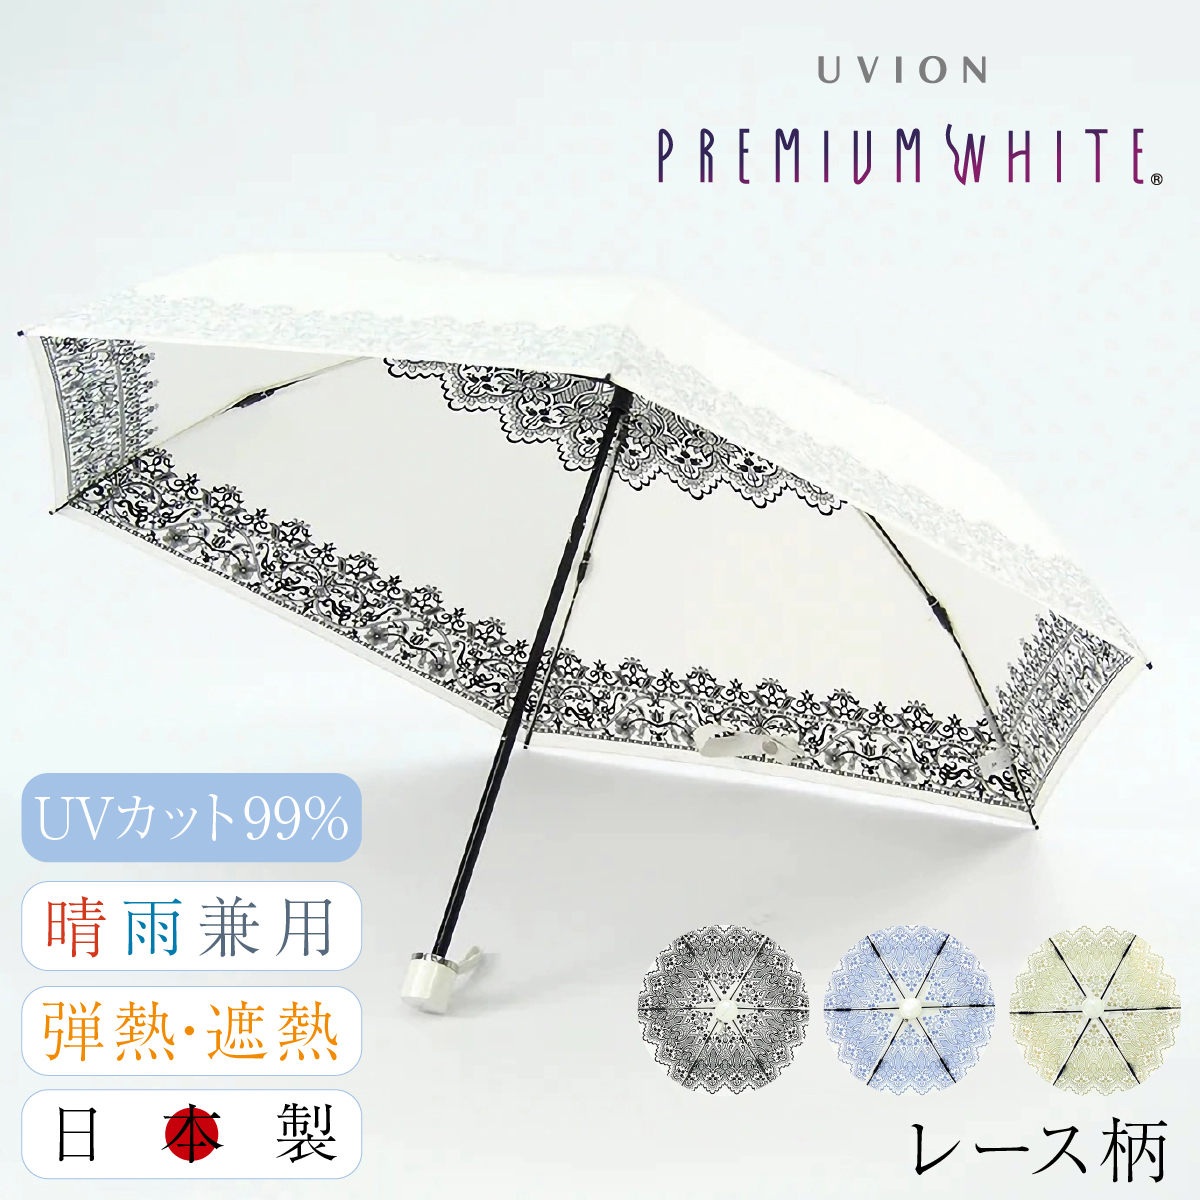 折りたたみ傘 日傘 完全遮光 晴雨兼用 レディース UVカット 白 ホワイト 軽量 4002 日本製 折り畳み傘 プレミアムホワイト UVION  ユビオン